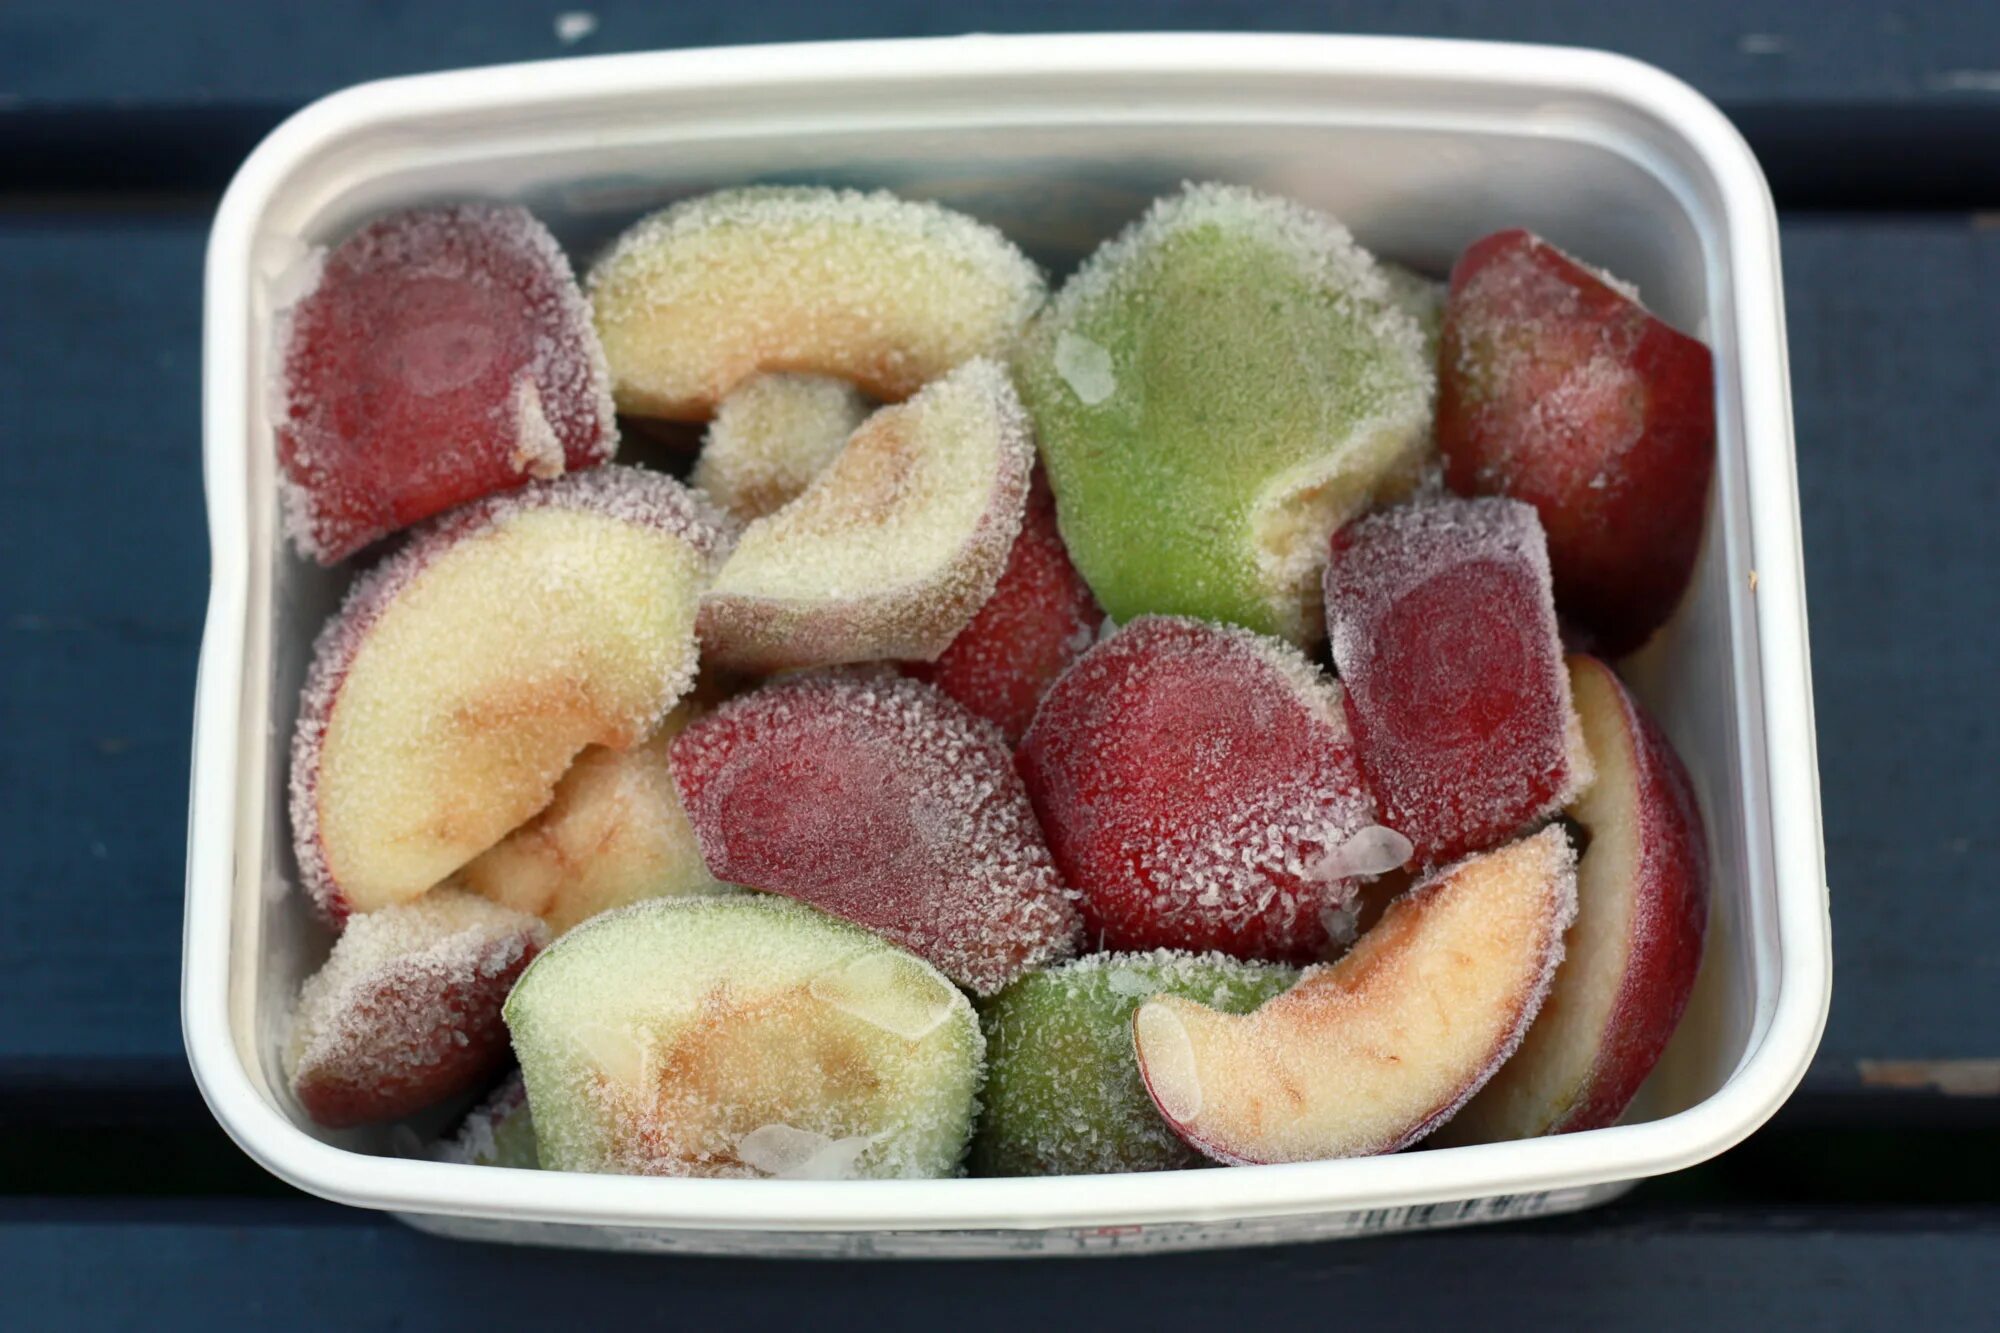 Freezing fruits. Замороженные фрукты. Замороженные яблоки. Заморозка фруктов на зиму. Заморозка ягод и фруктов на зиму в морозилке.